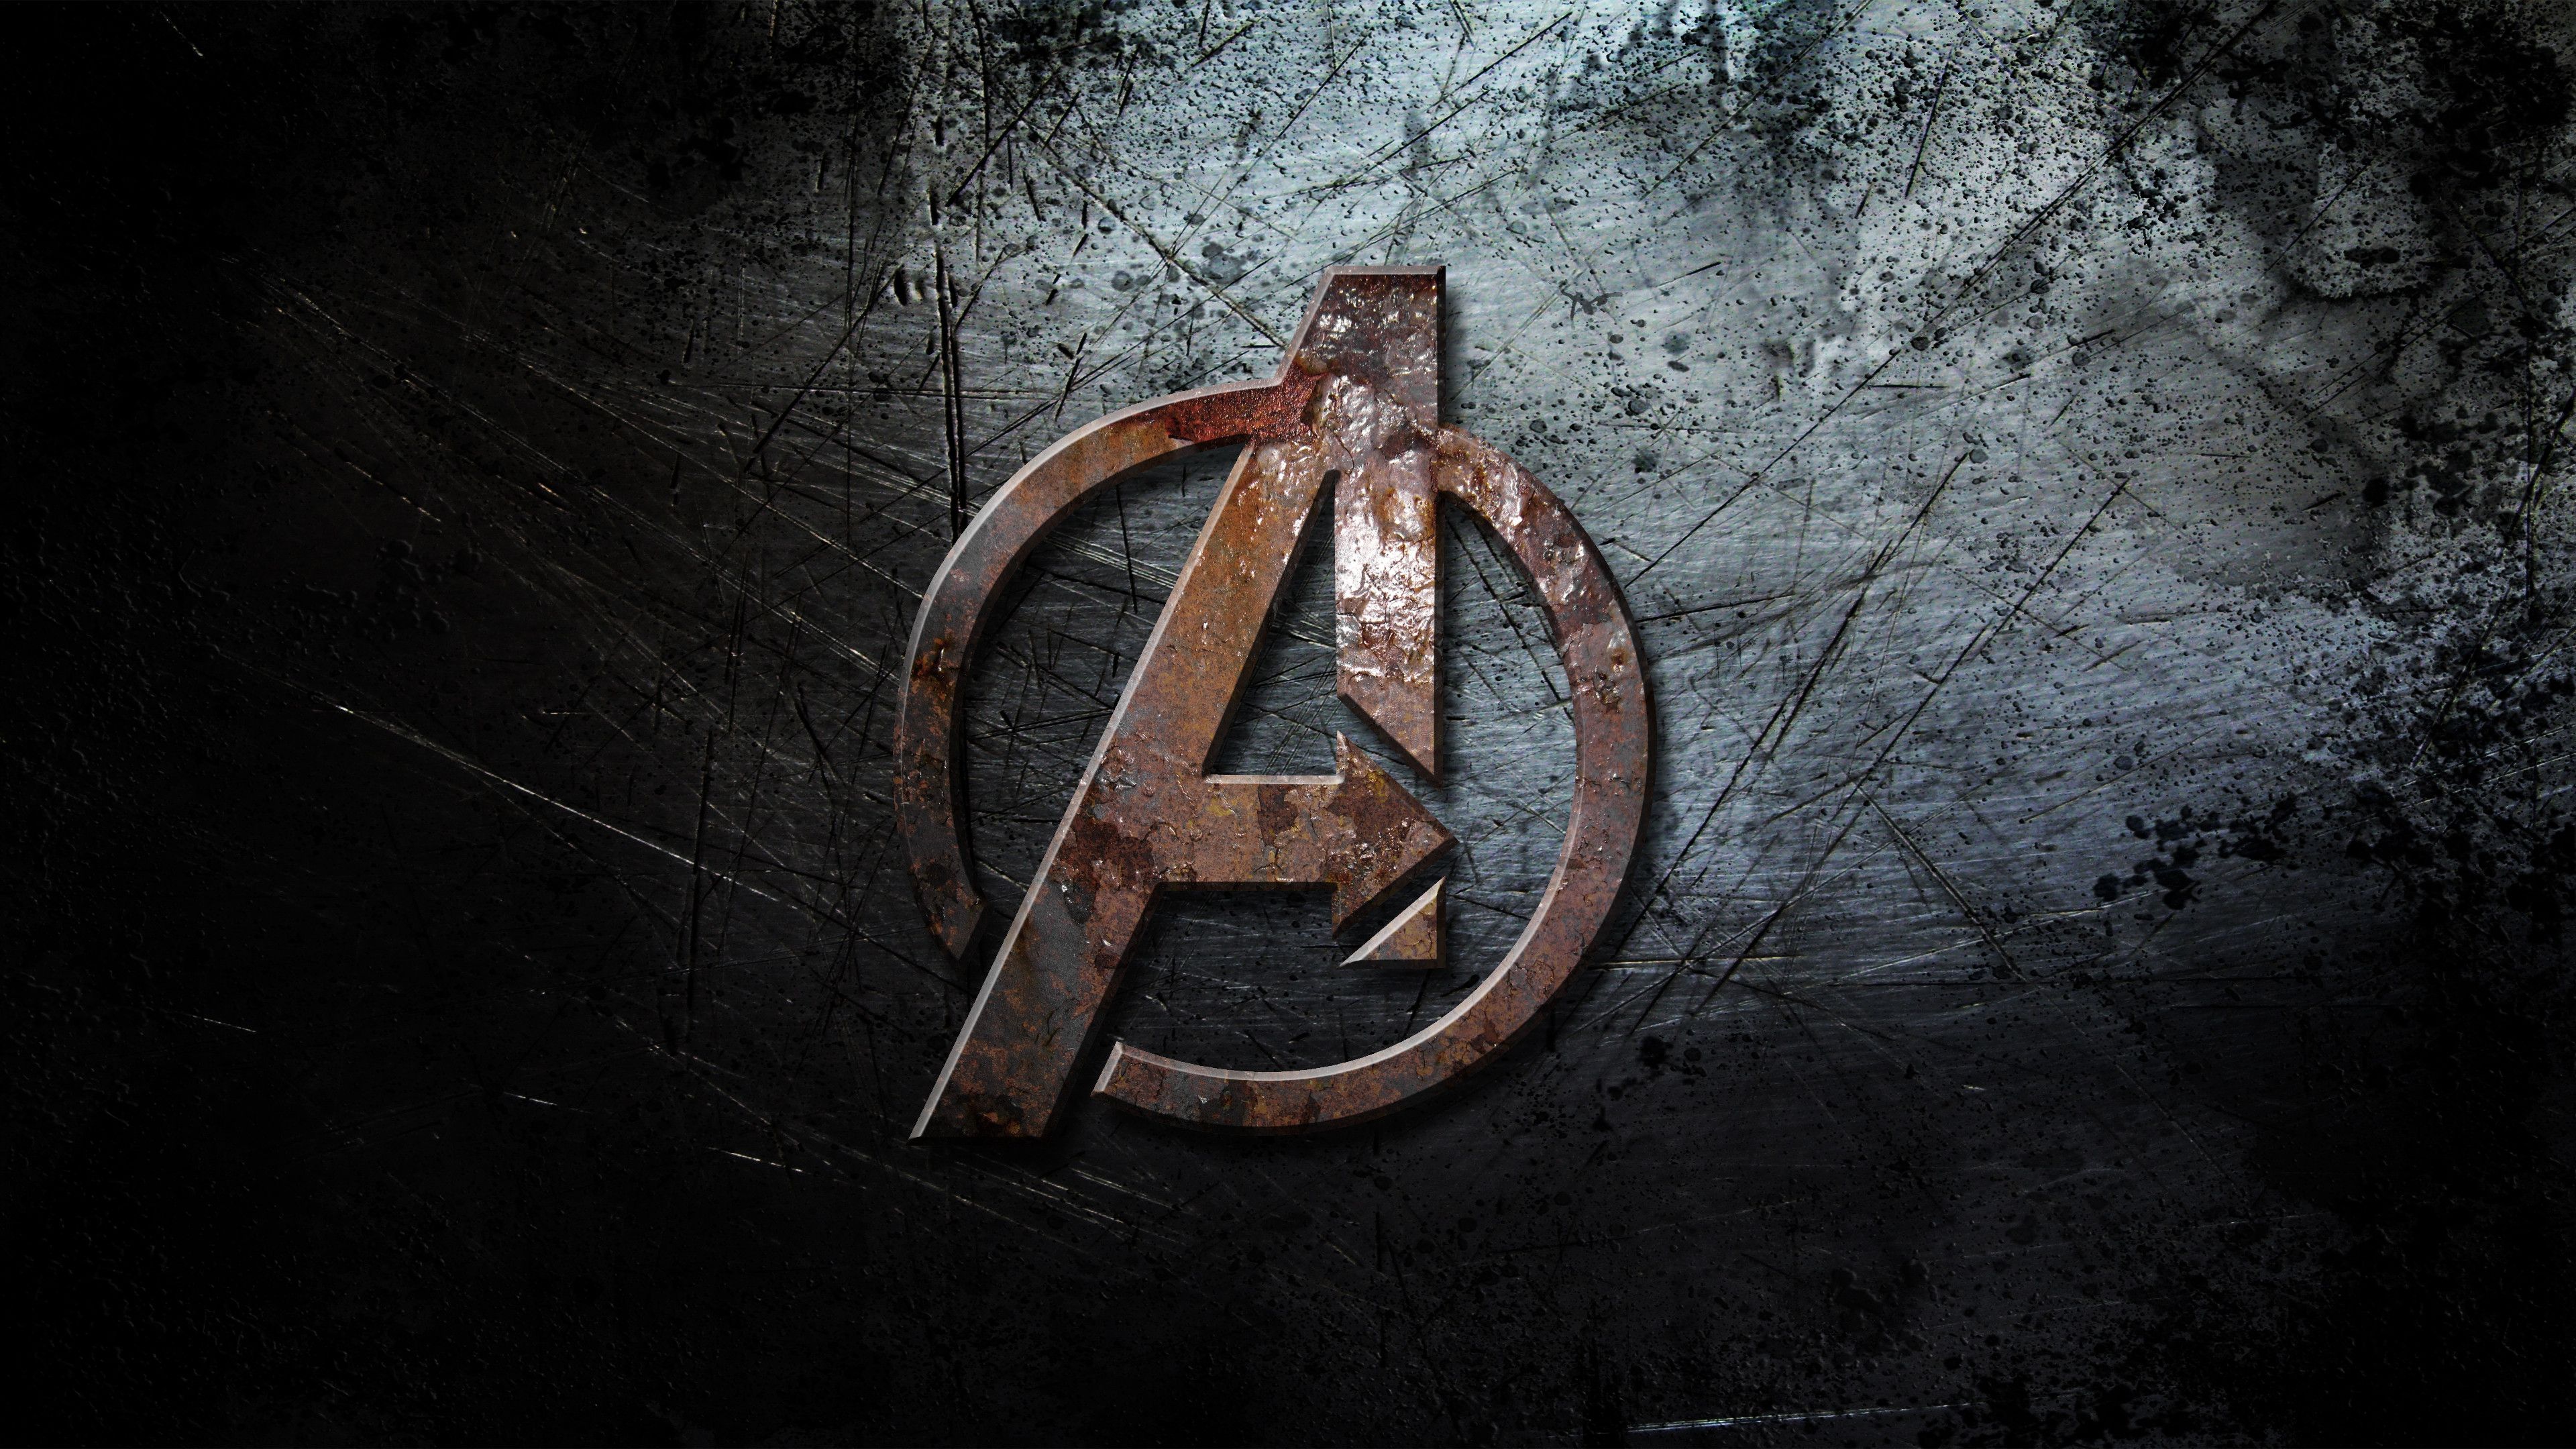 71+] Avengers Logo Wallpapers